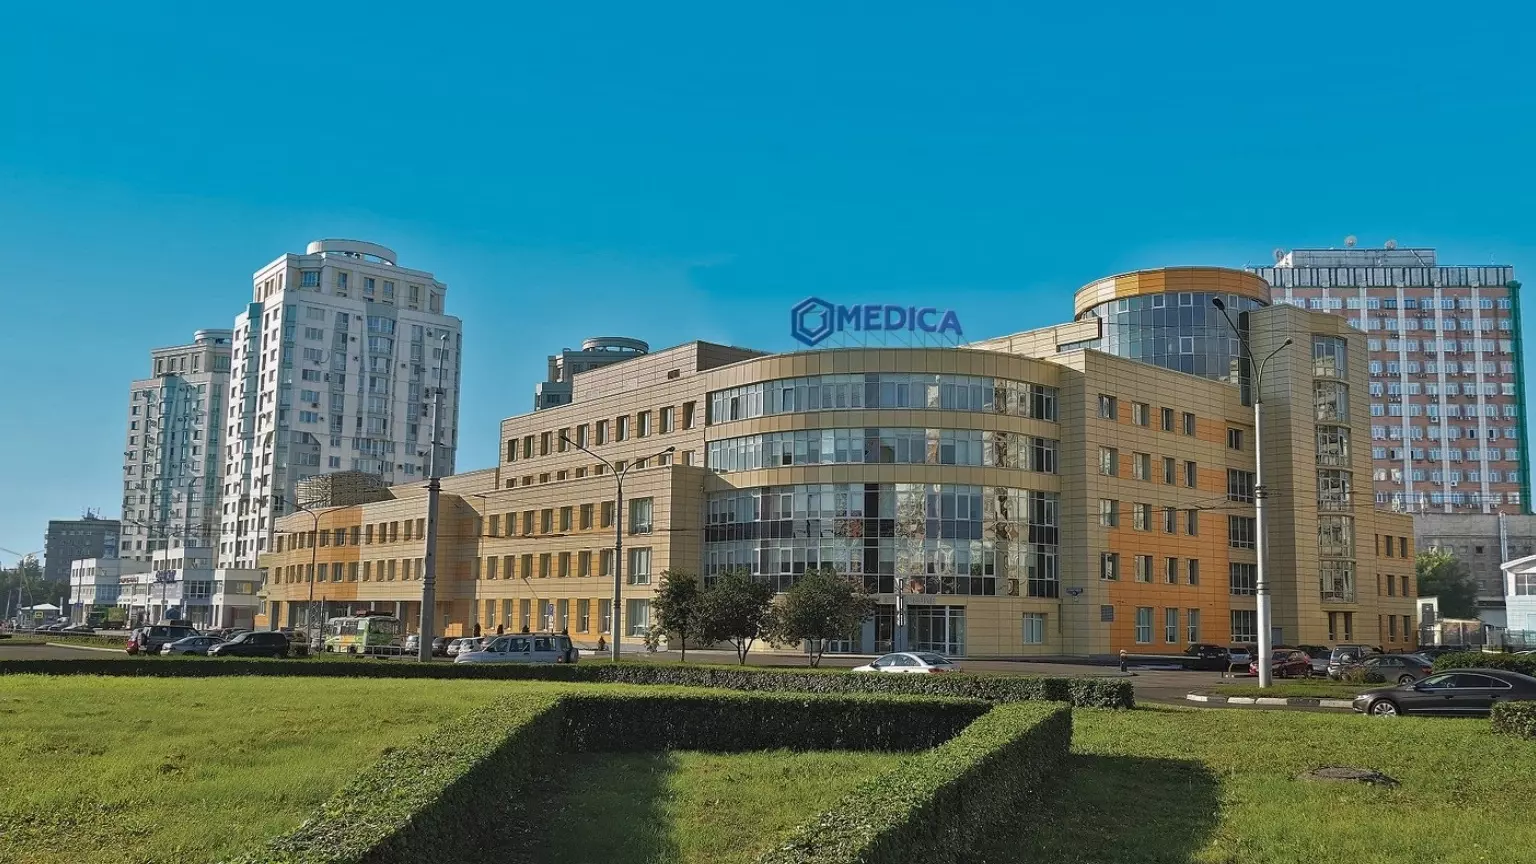 Медцентр в Красноярске будет аналогичным центру «Медика» в Новокузнецке — на фото.